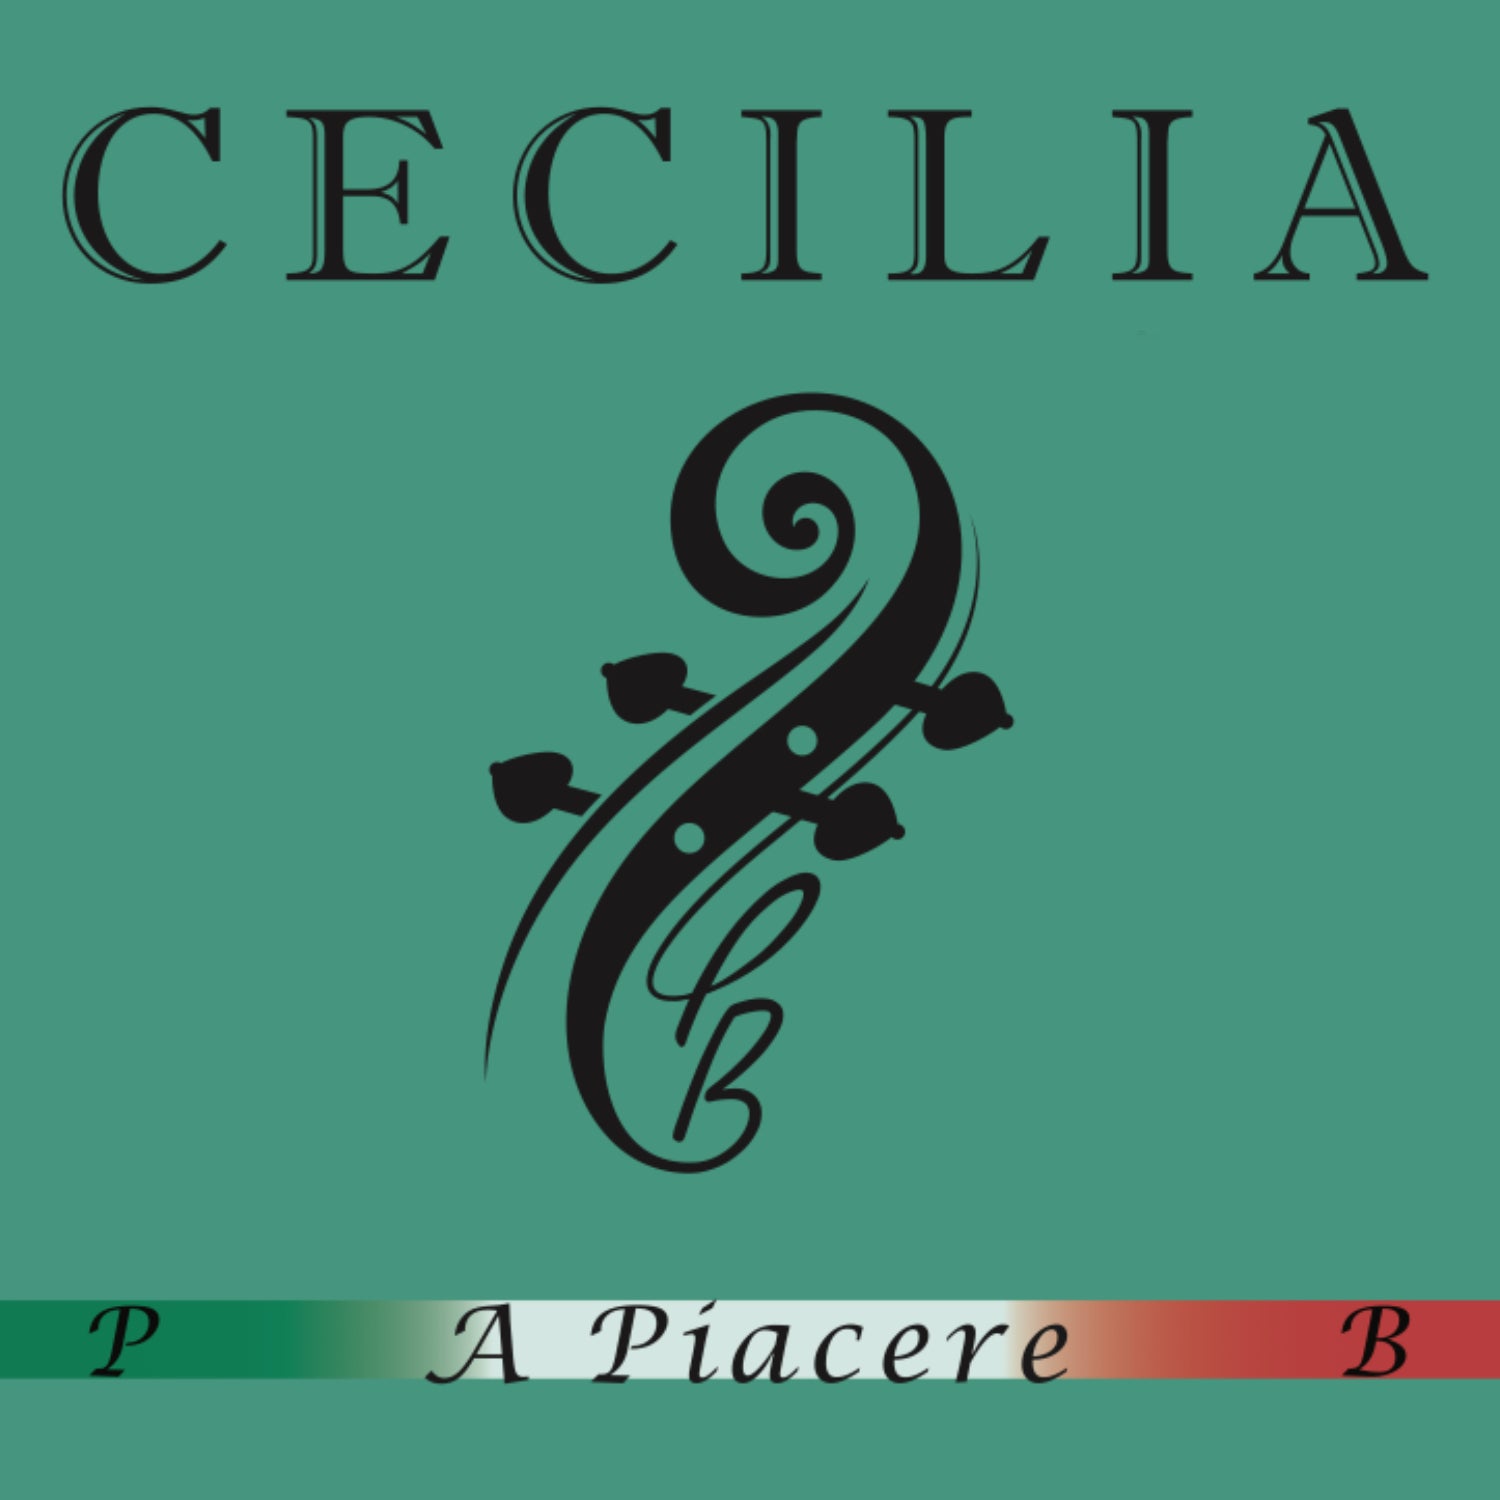 CECILIA A. Piacere Violin MINI with Spreader